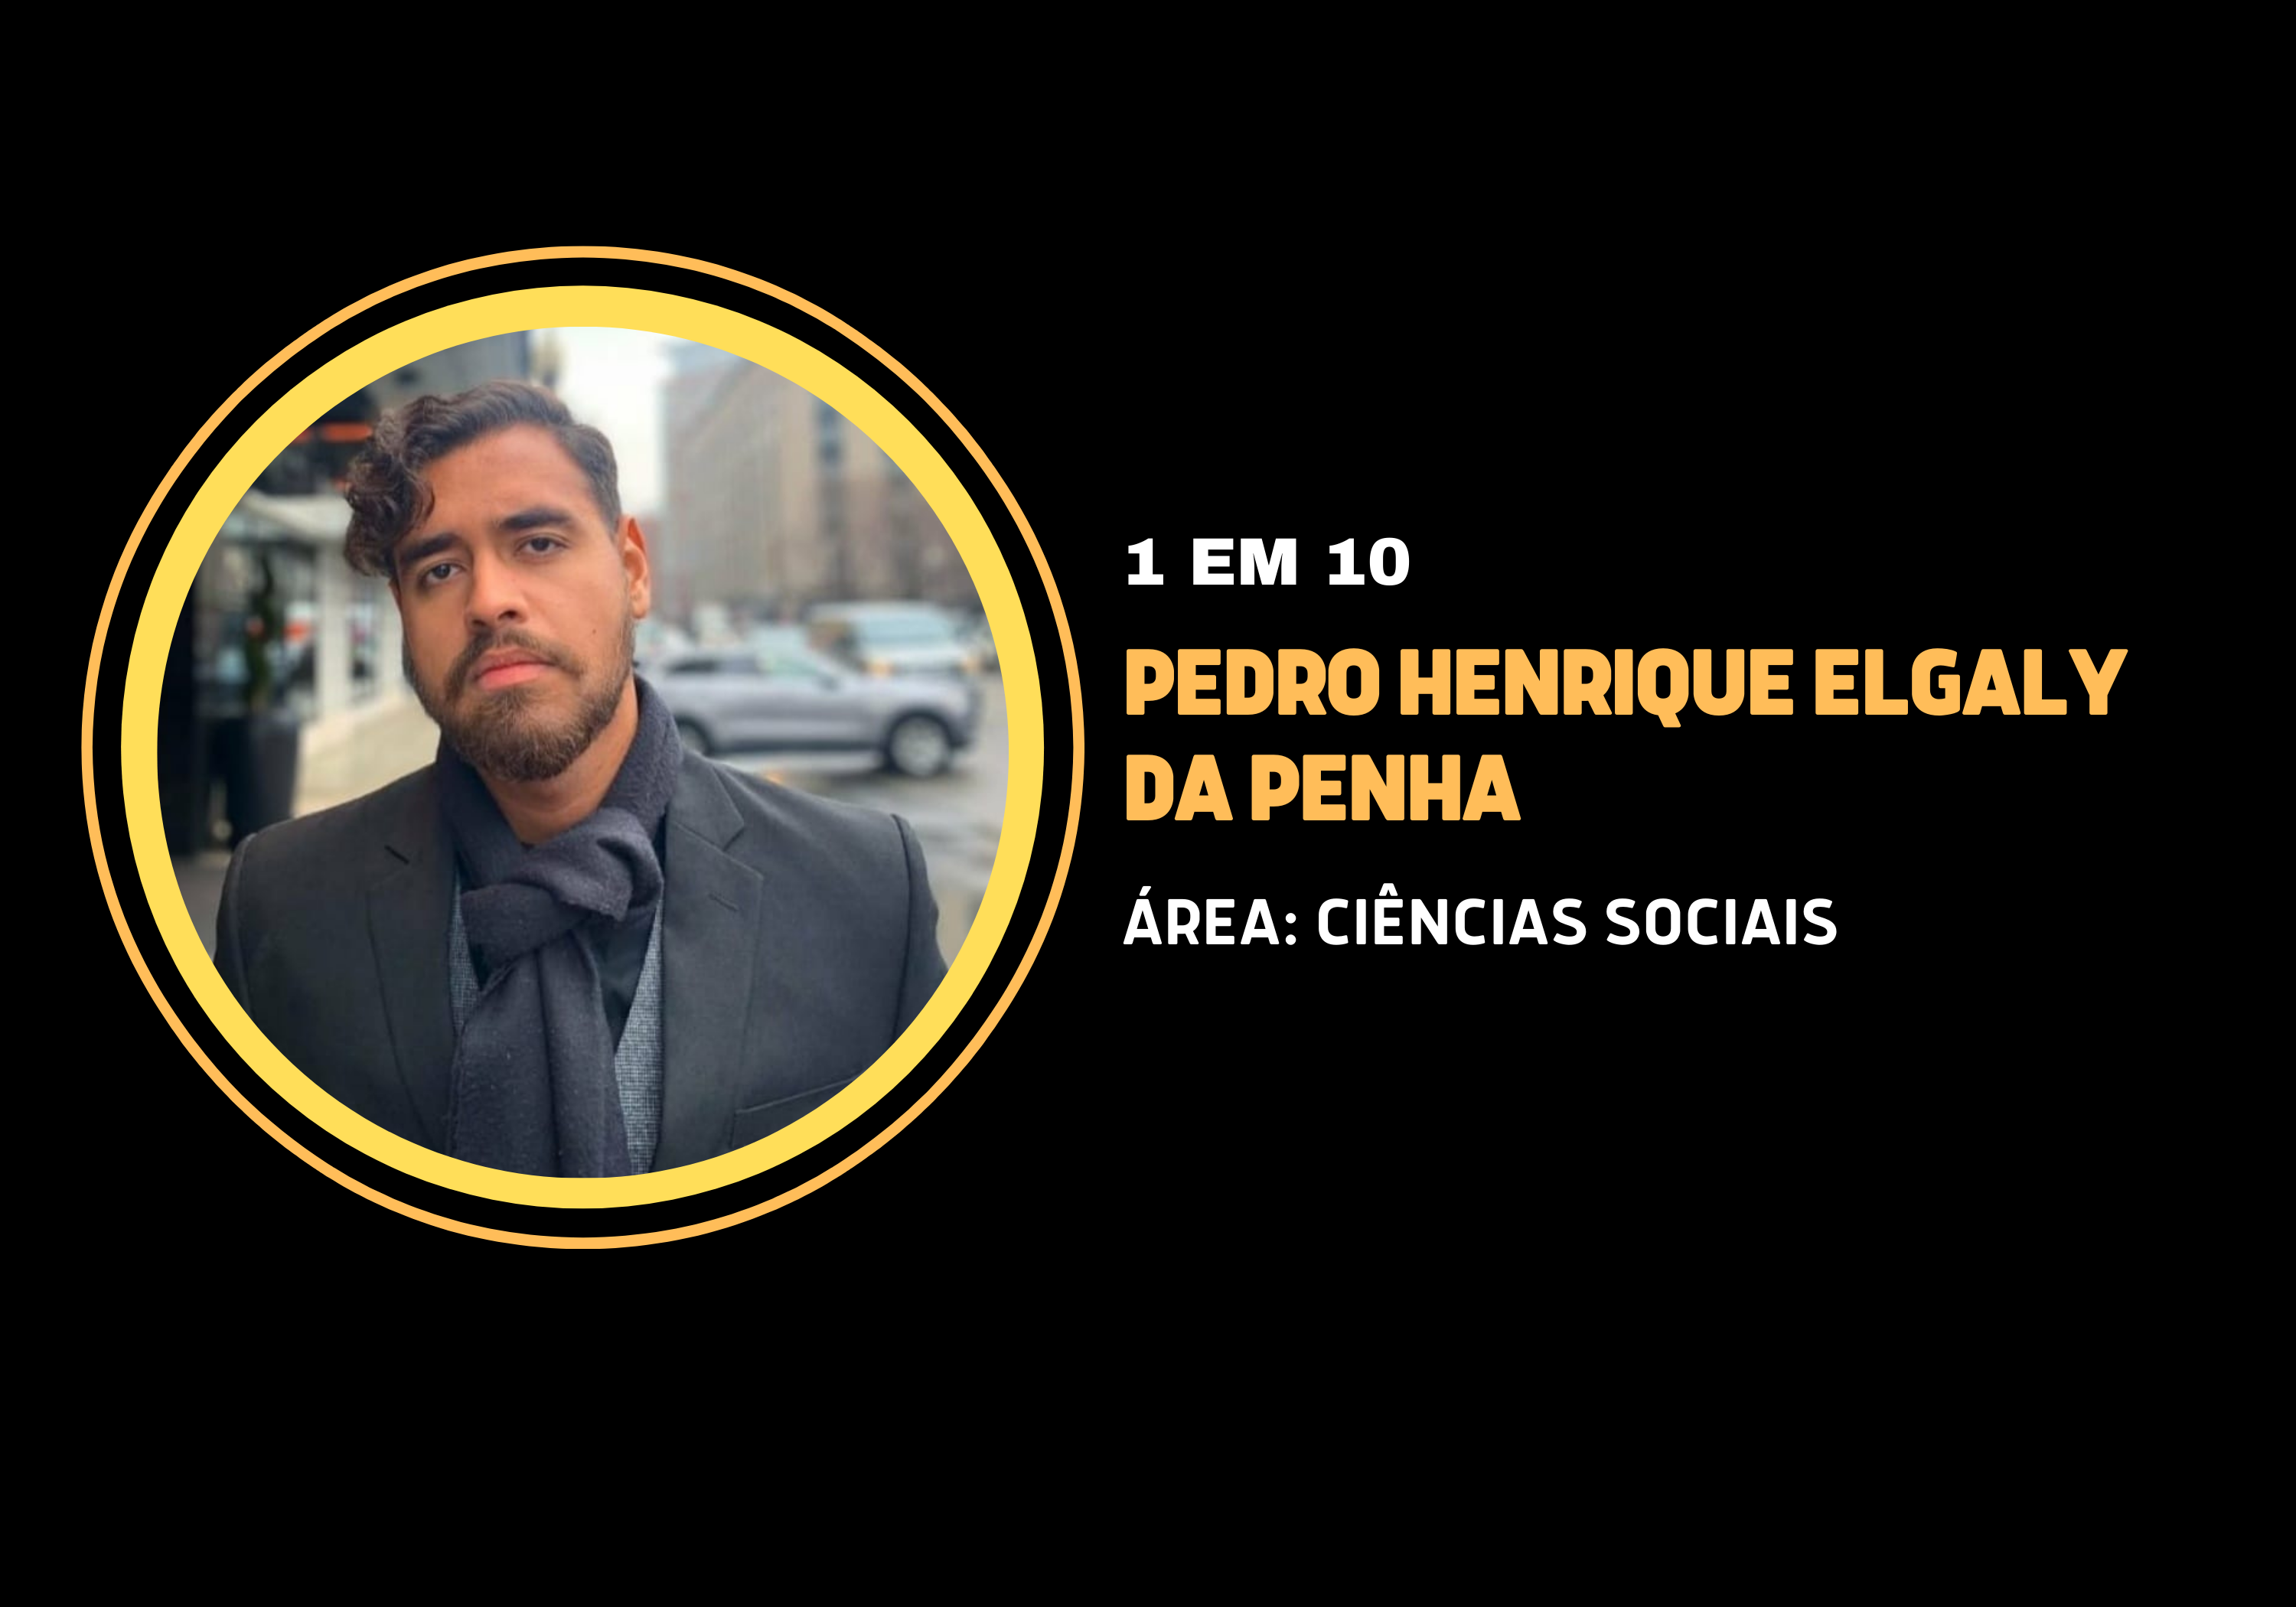 Pedro Henrique Elgaly da Penha | 1 em 10